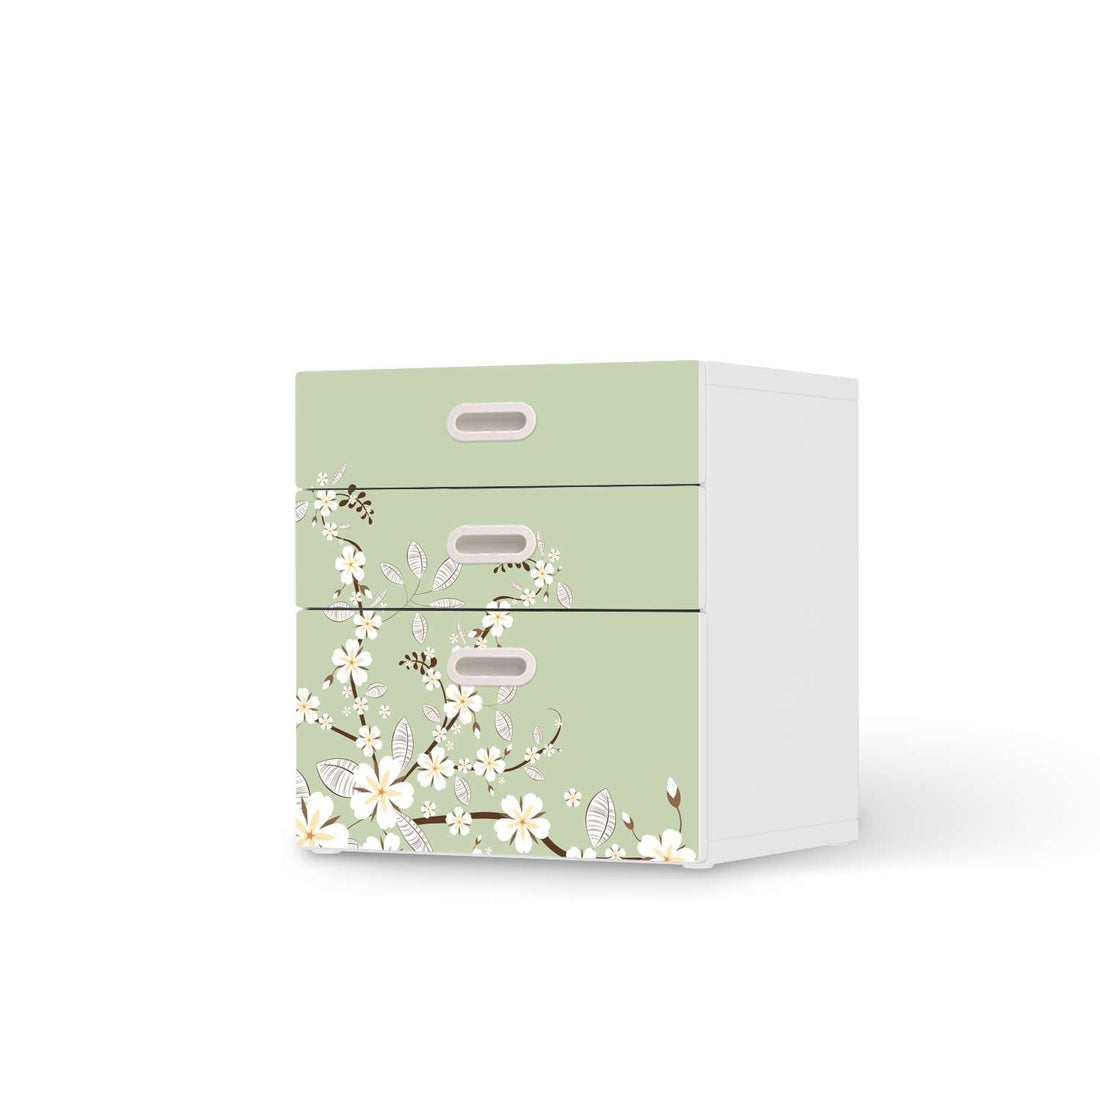 Folie für Möbel White Blossoms - IKEA Stuva / Fritids Kommode - 3 Schubladen  - weiss